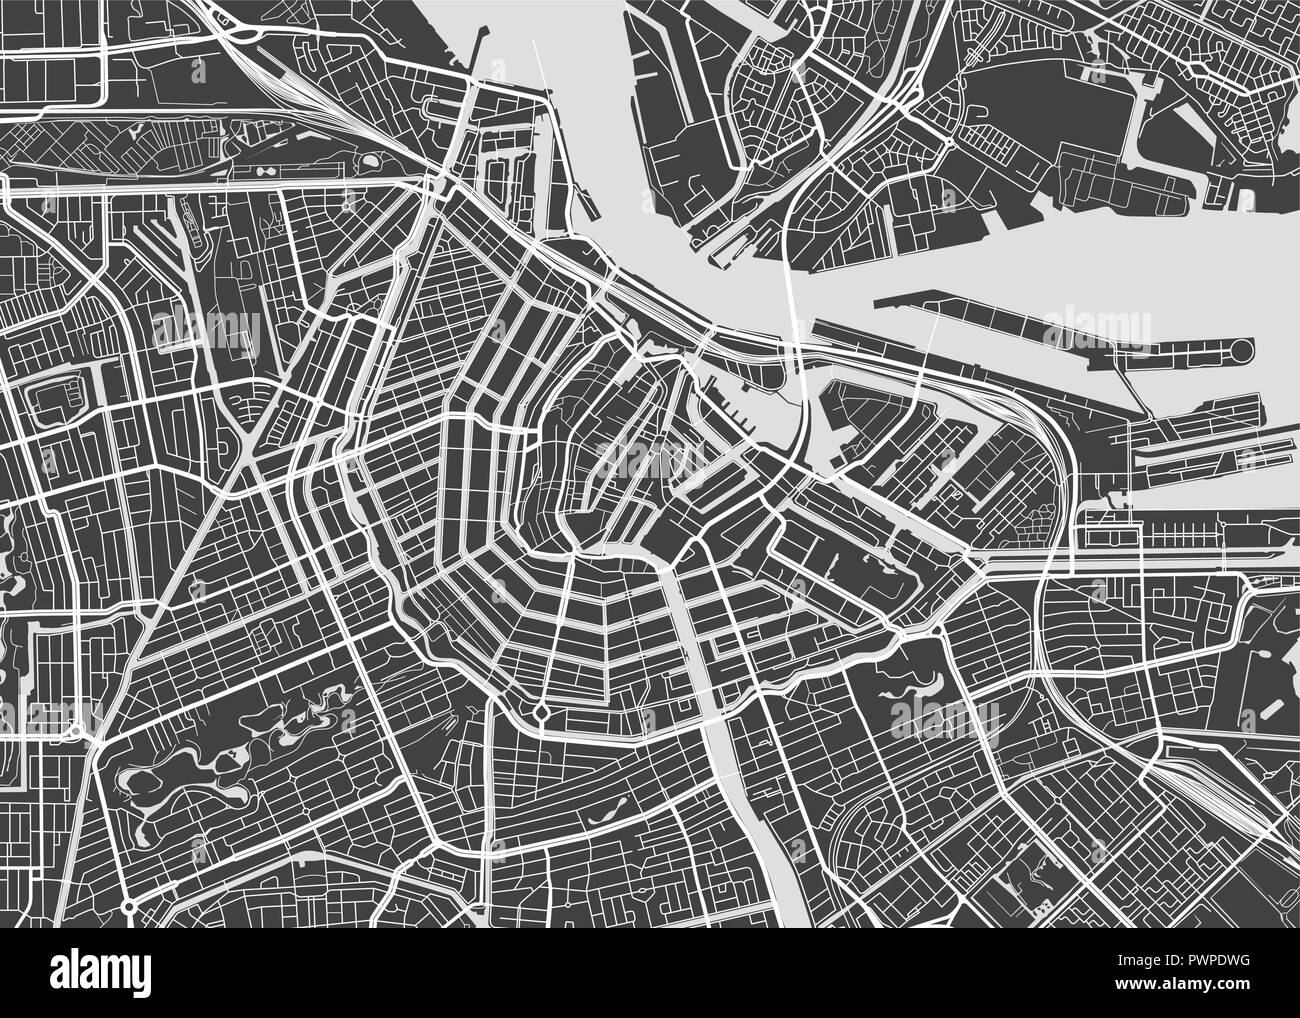 Vektor detaillierte Karte Amsterdam detaillierten Plan der Stadt, Flüsse und Straßen Stock Vektor